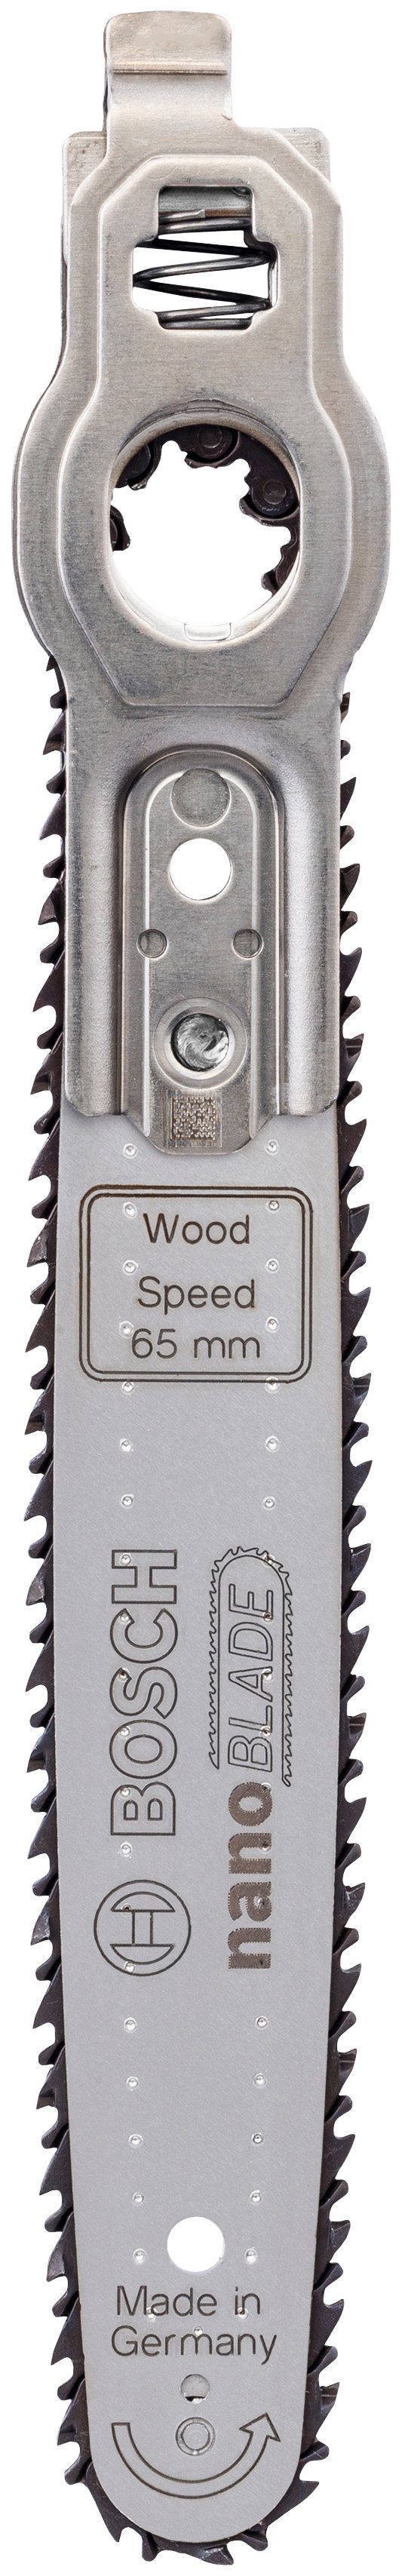 Wood 65, Mikro-Kettensägeblatt Home Sägeblatt nanoBLADE Bosch Speed nanoBLADE & 65 Wood Speed Garden